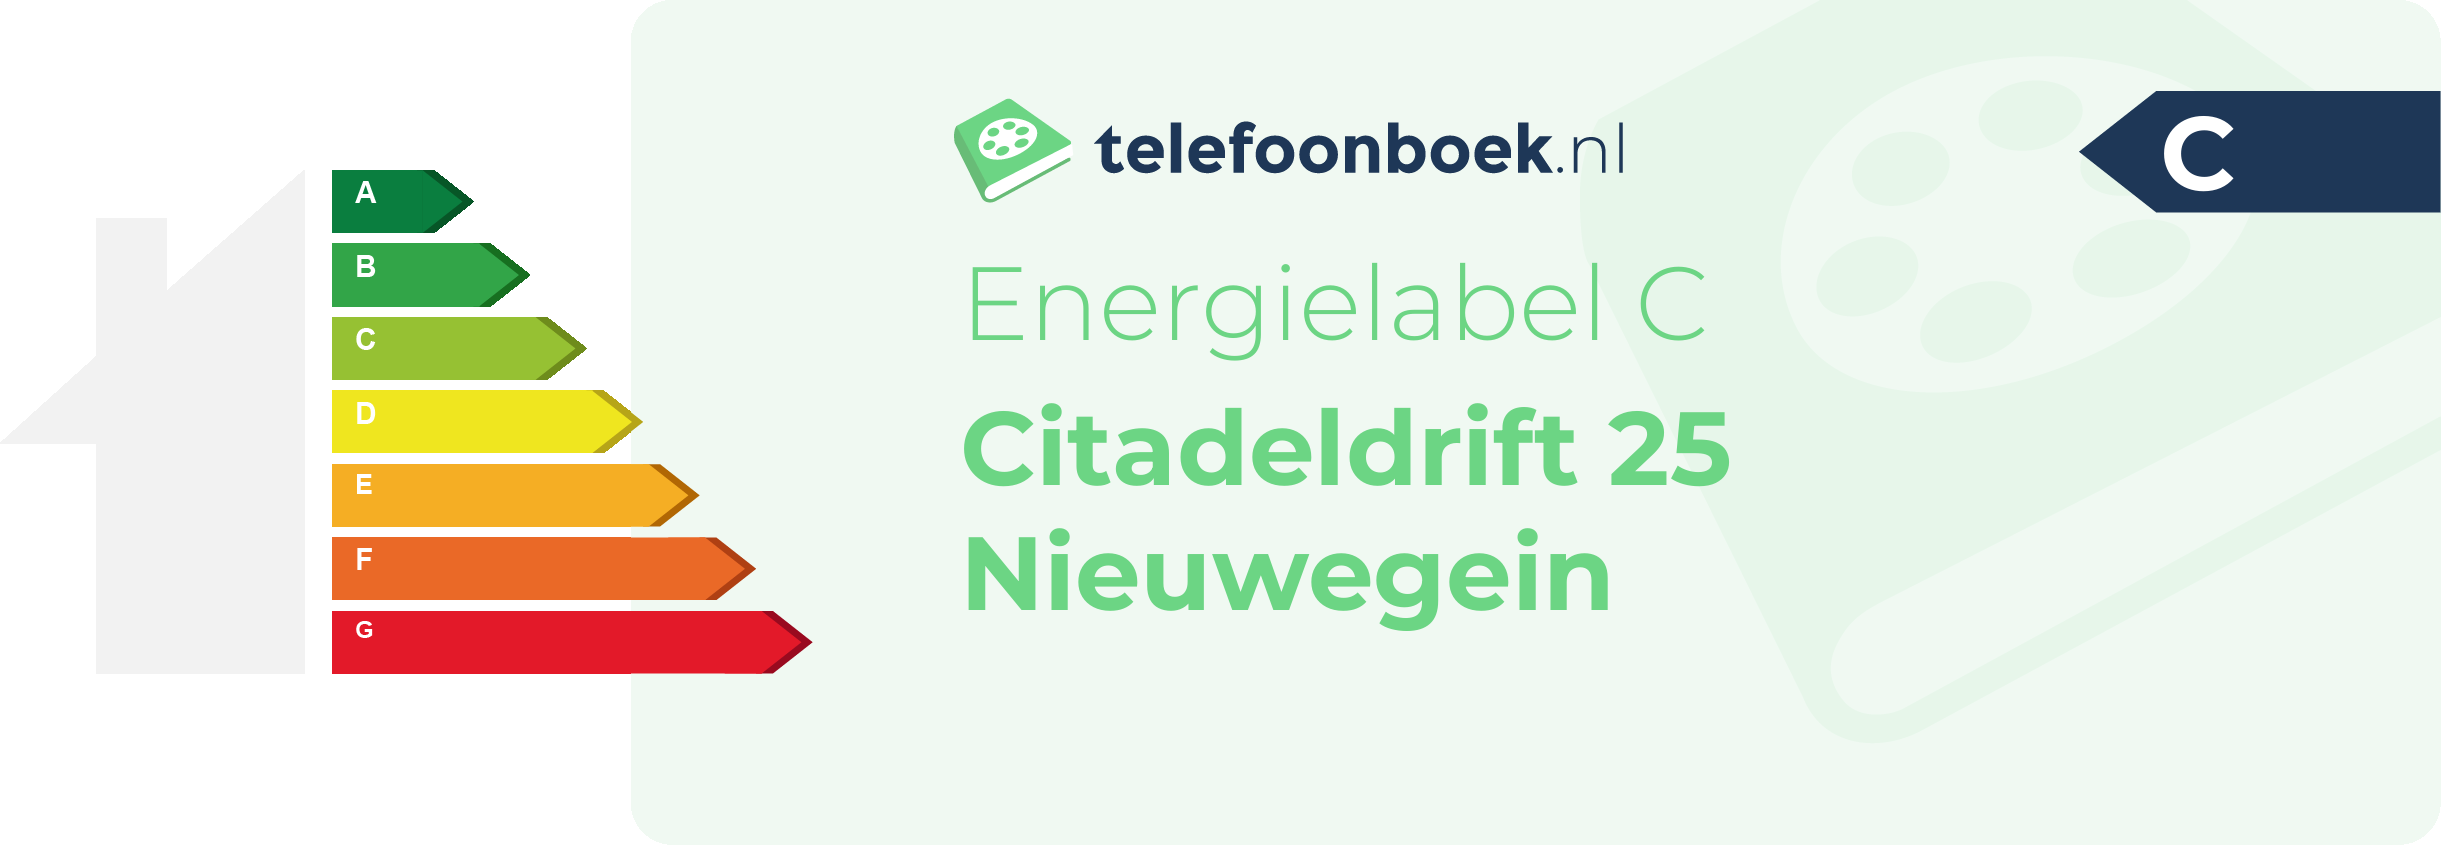 Energielabel Citadeldrift 25 Nieuwegein